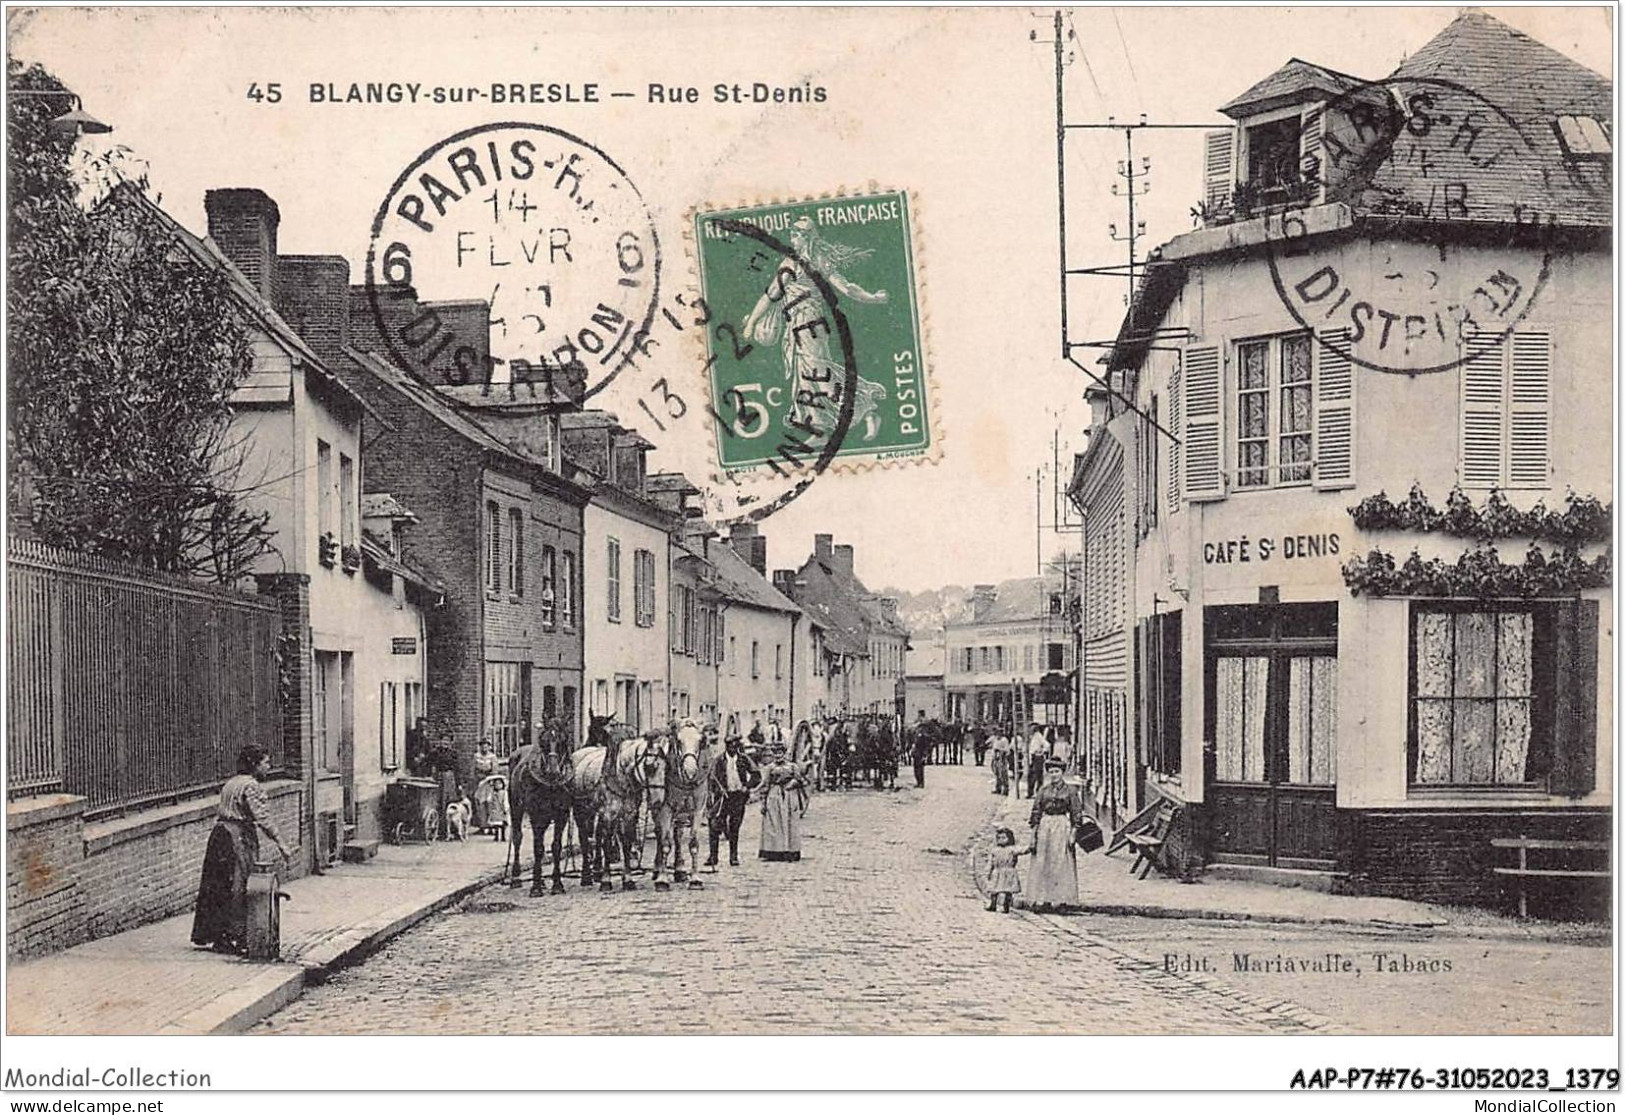 AAPP7-76-0604 - BLANGY-SUR-BRESLE - Rue Saint-Denis - Blangy-sur-Bresle